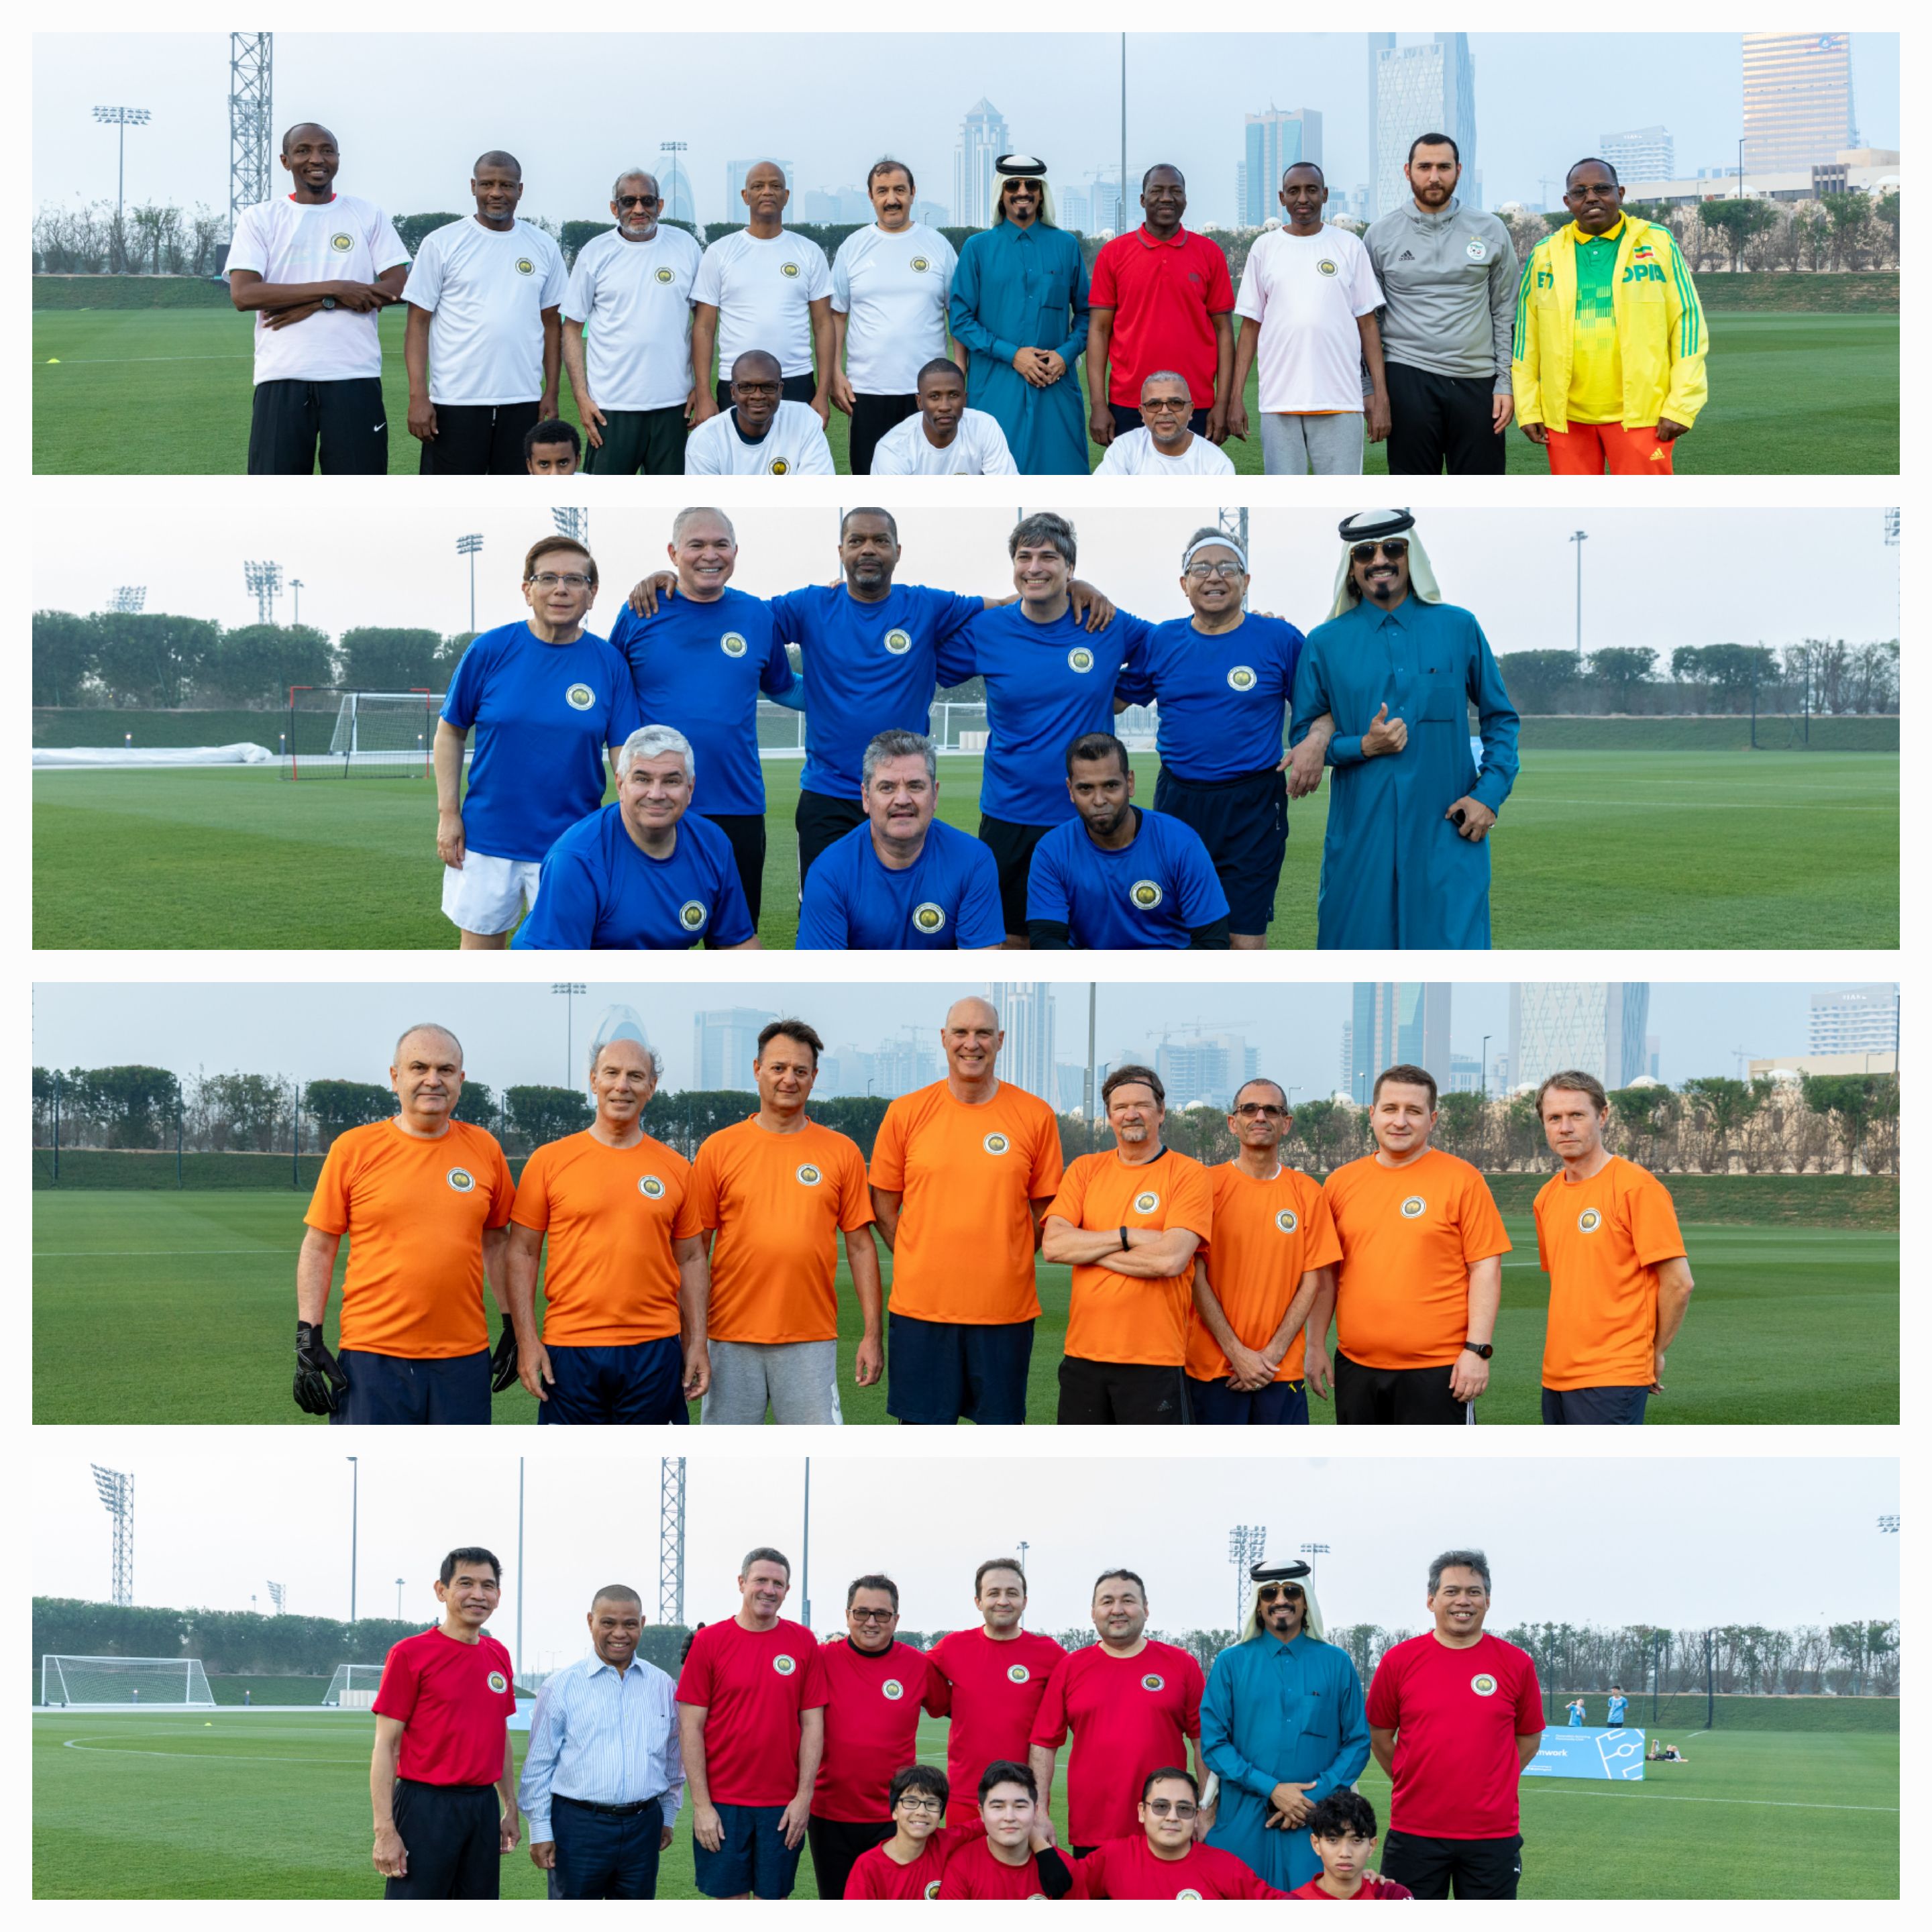 Generation Amazing Foundation Celebrates International Cooperation with Ambassadors Football Tournament